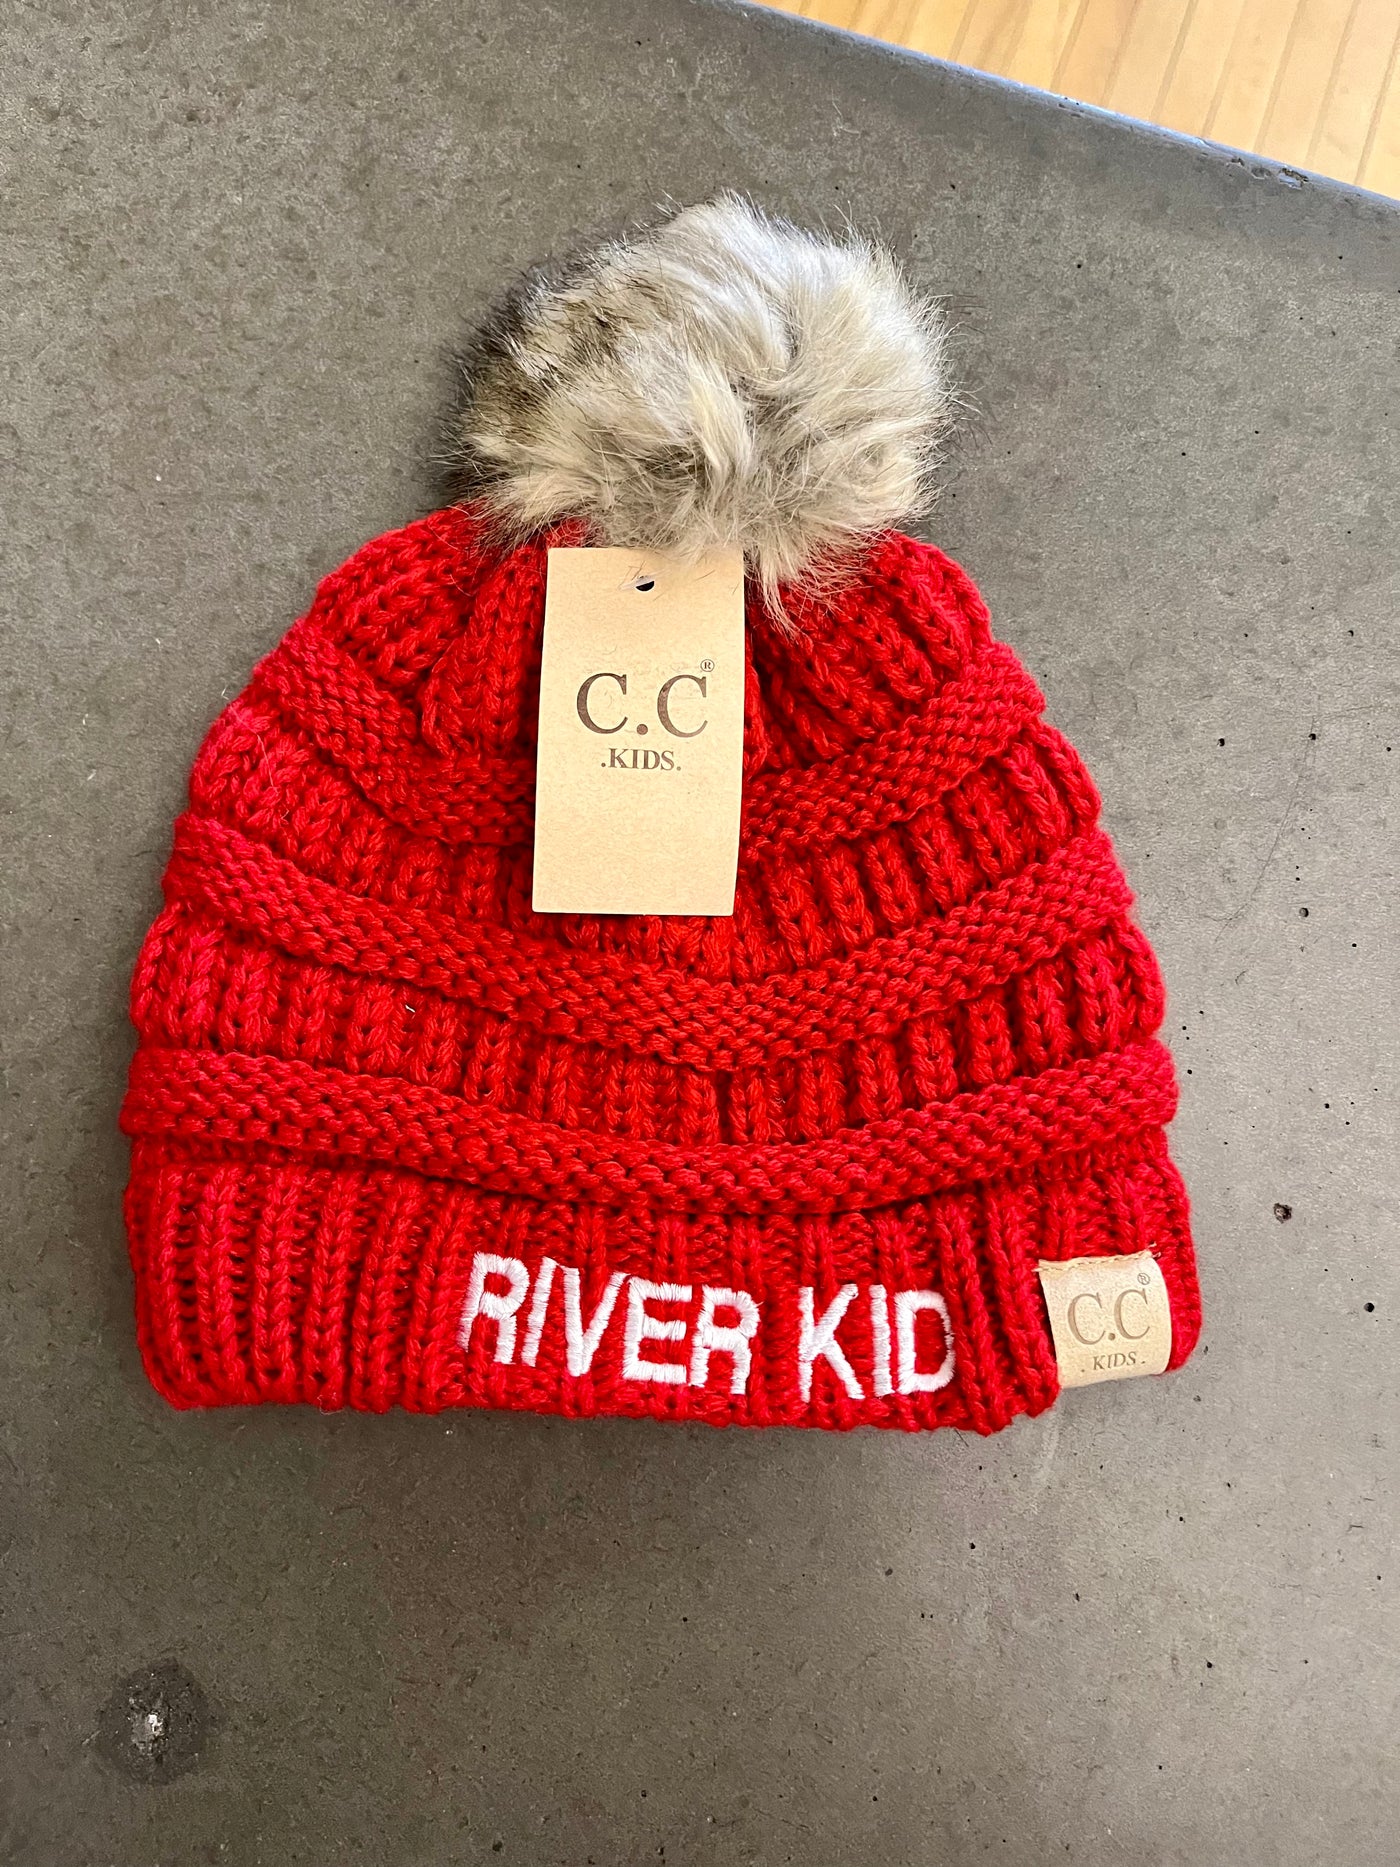 River Kid pom hat